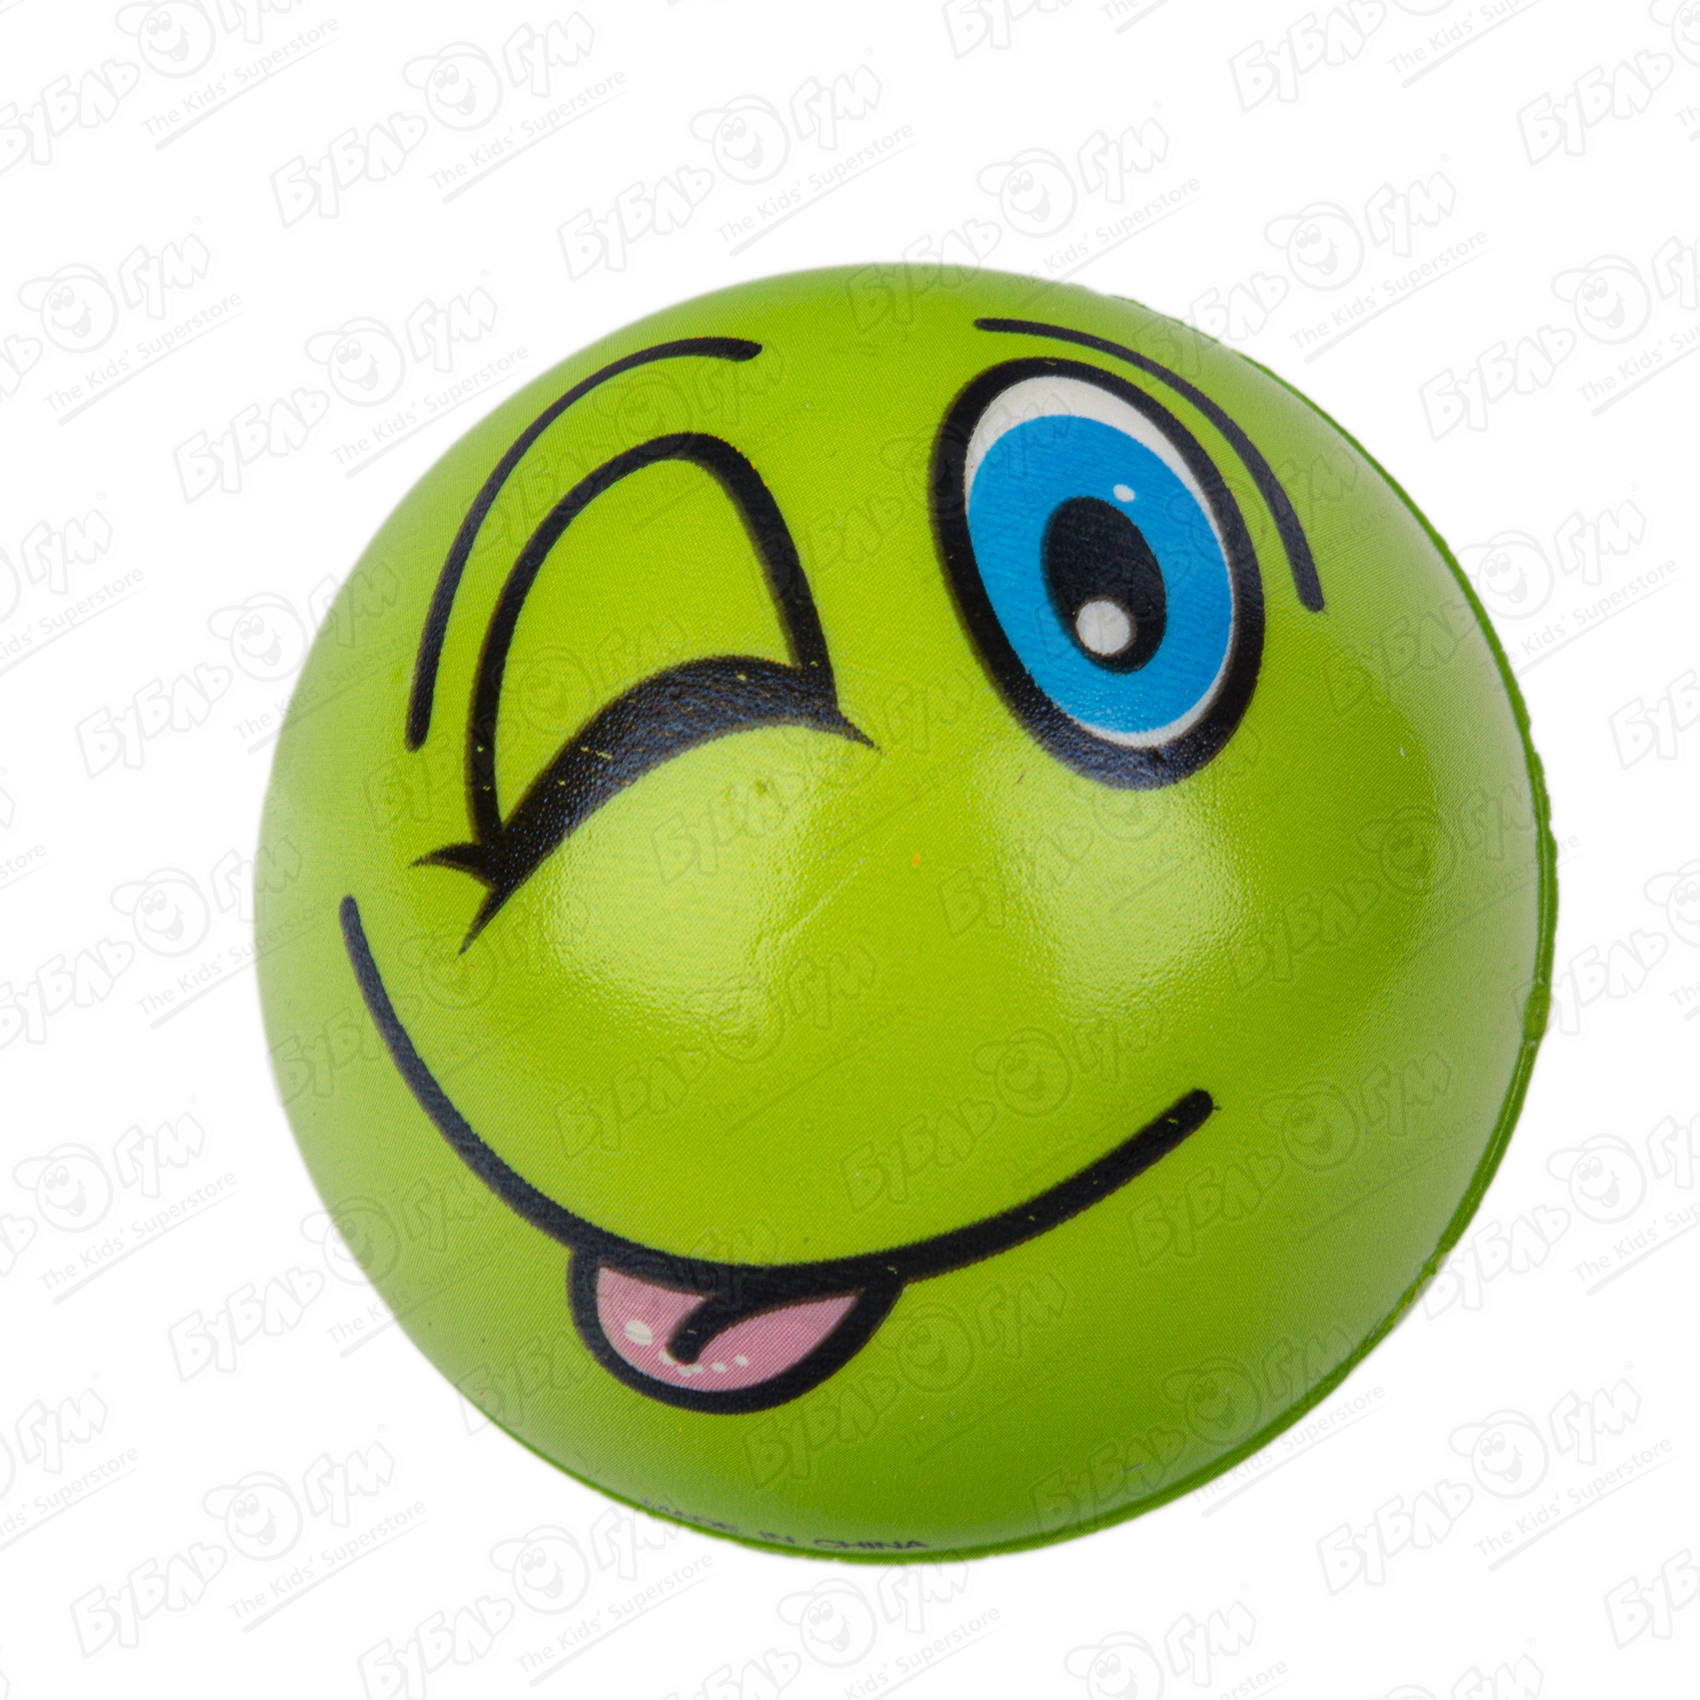 Мячик «Эмобол» мягкий в ассортименте, размер Маленький